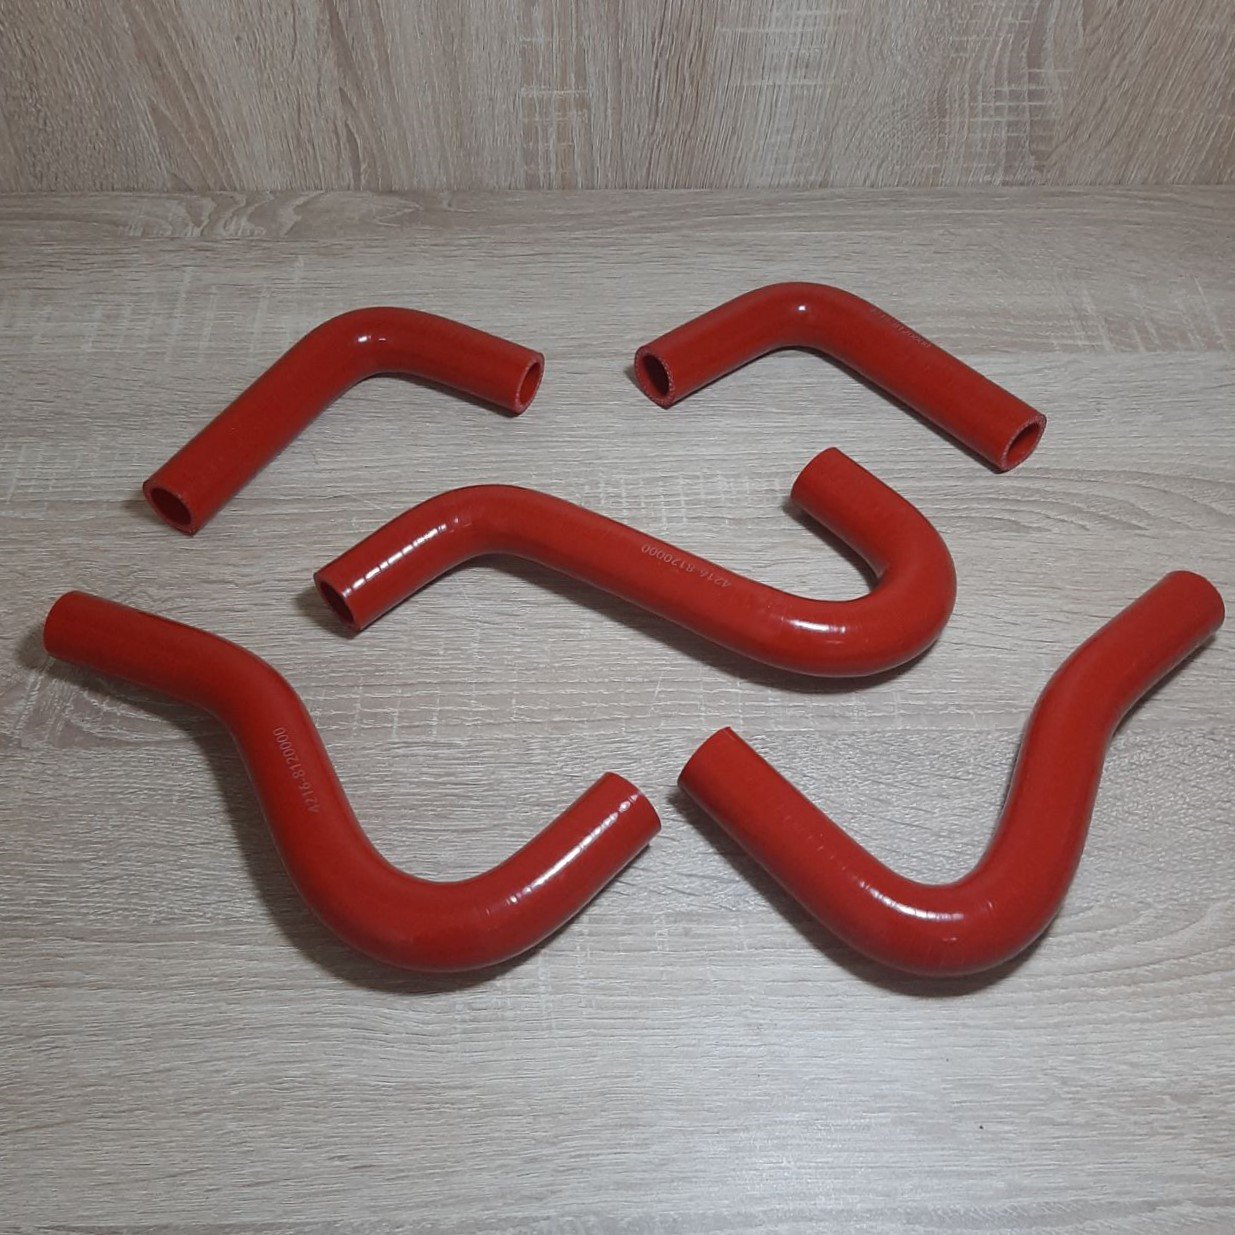 Патрубок печки (отопителя) Газель Соболь Рута Бизнес дв.4216 Euro-4, Evotech A274 комплект 5 шт (силикон красный) (пр-во Техно Резина), Красный